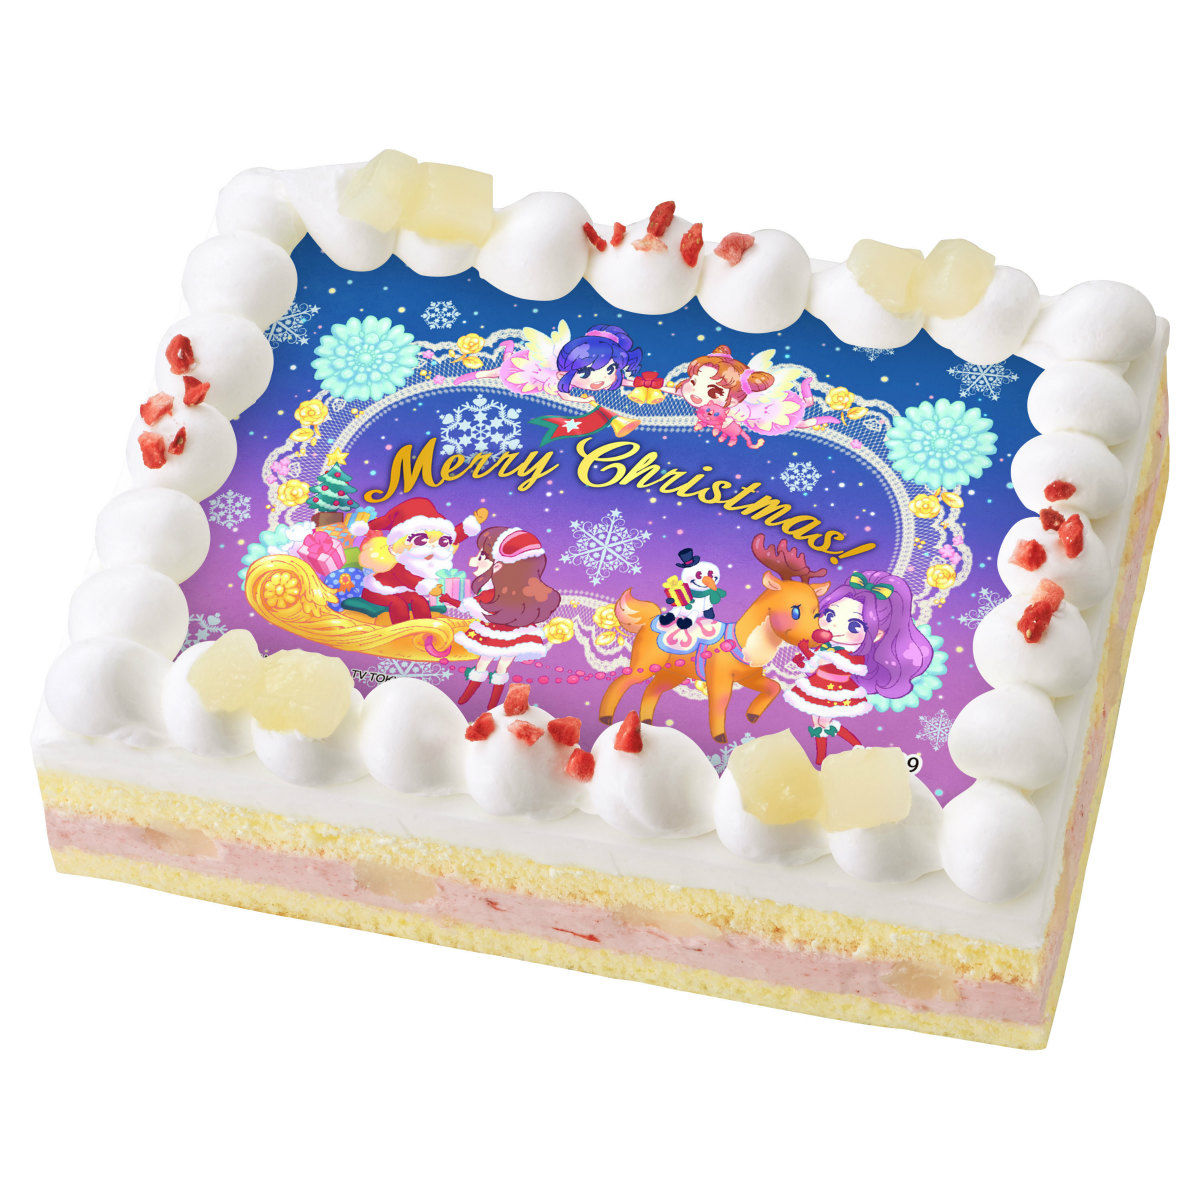 キャラデコプリントケーキ クリスマス アイカツ 発売日 17年12月 バンダイ キャンディ公式サイト